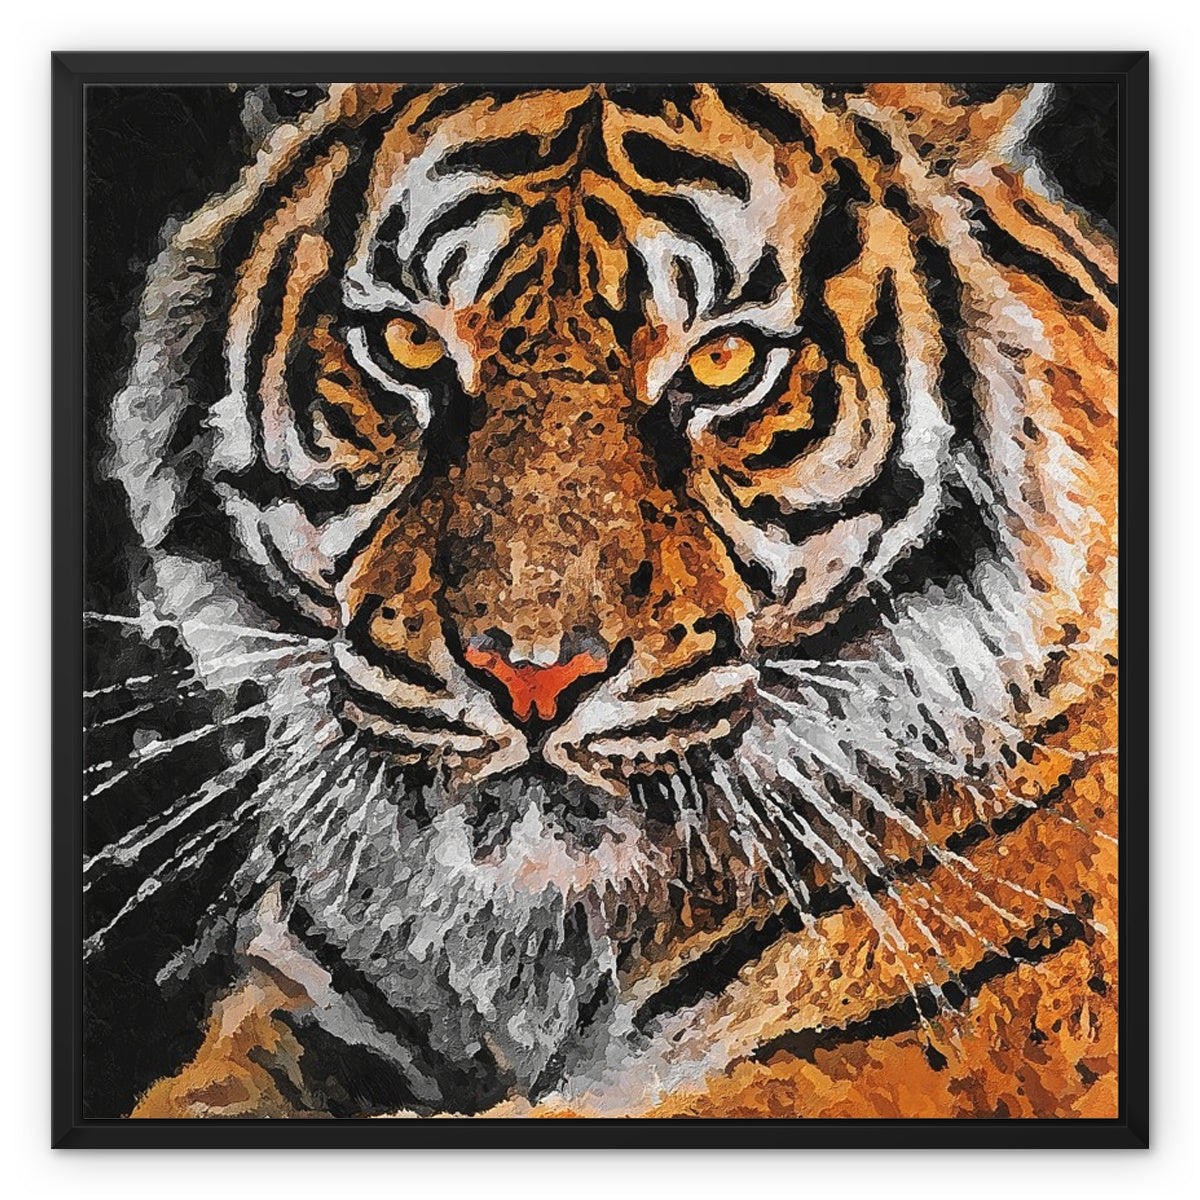 Tiger Oil Palette Print Framed Canvas